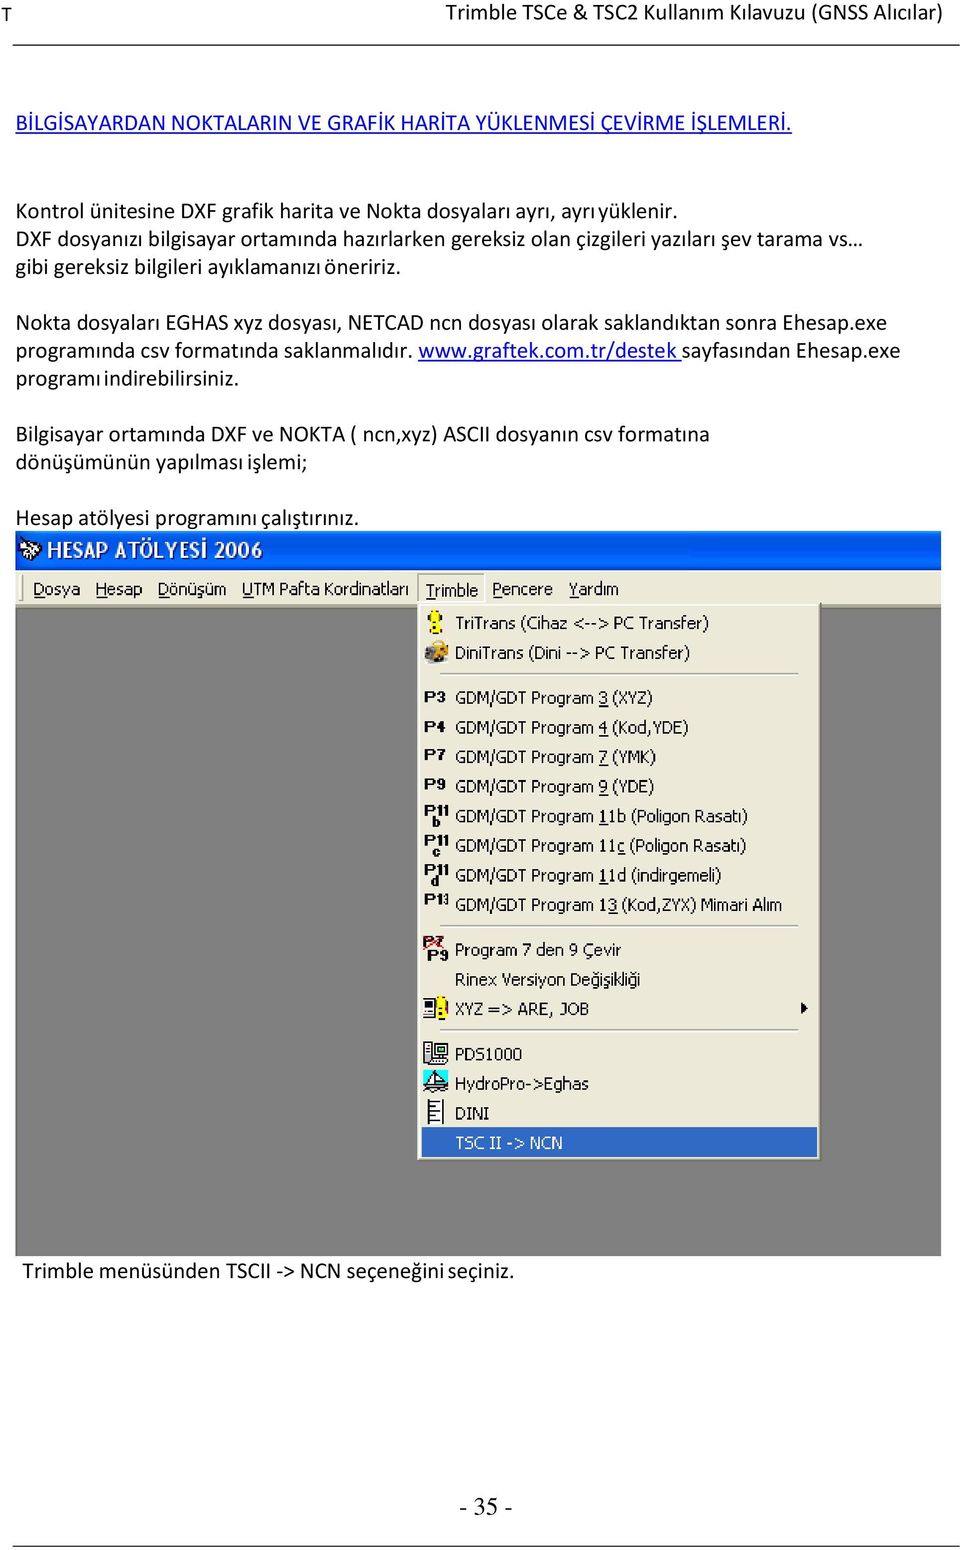 Nokta dosyaları EGHAS xyz dosyası, NETCAD ncn dosyası olarak saklandıktan sonra Ehesap.exe programında csv formatında saklanmalıdır. www.graftek.com.